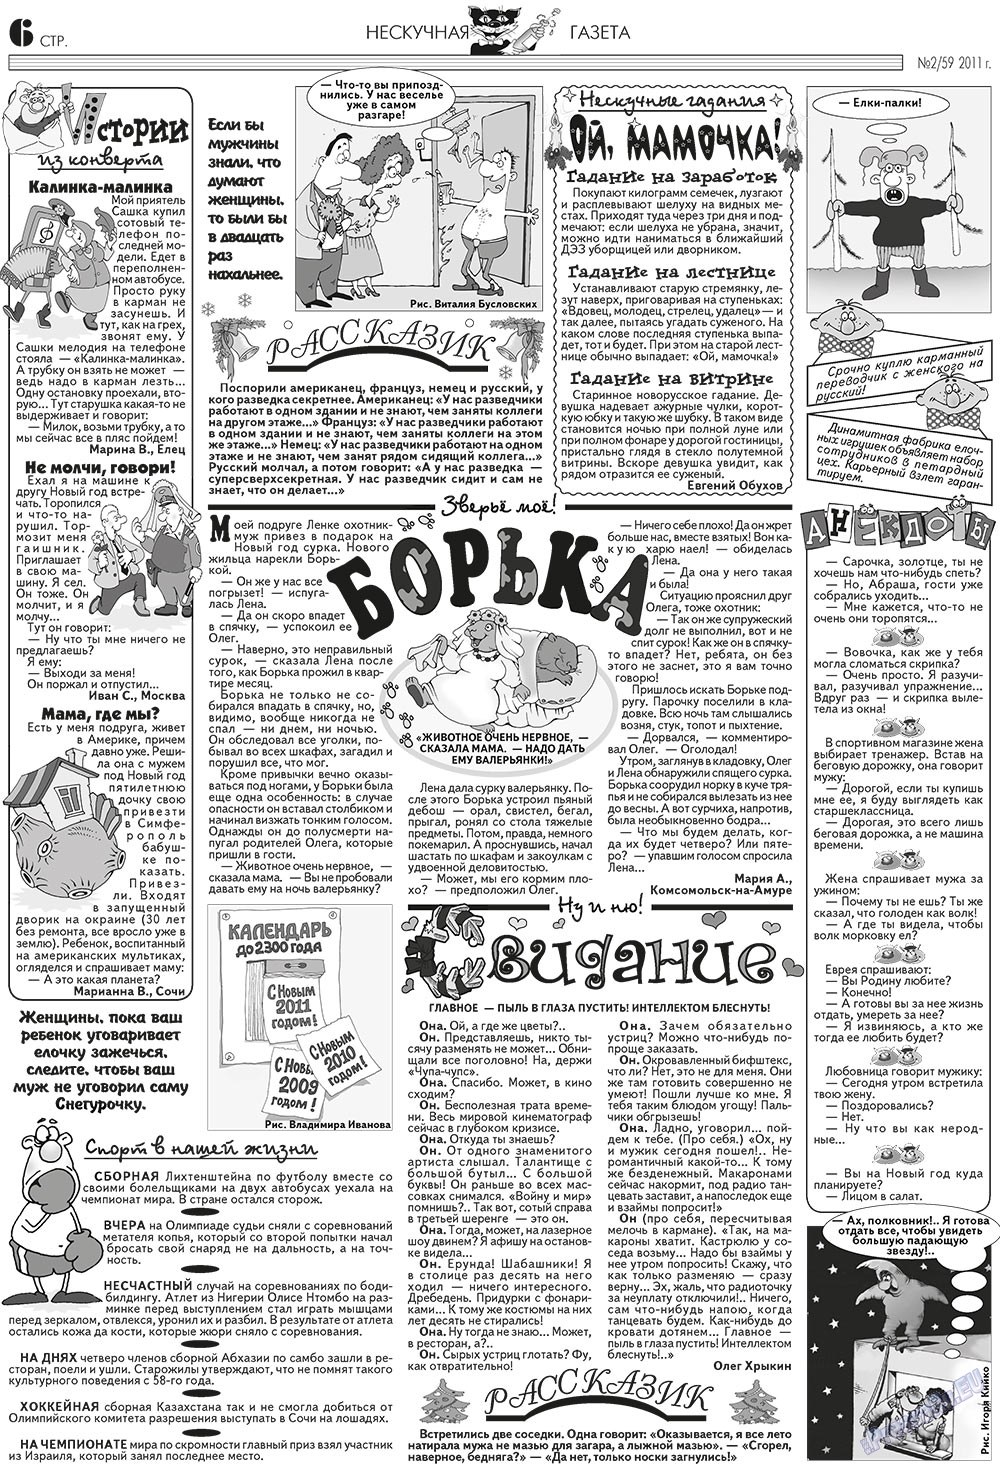 Нескучная газета (журнал). 2011 год, номер 2, стр. 6